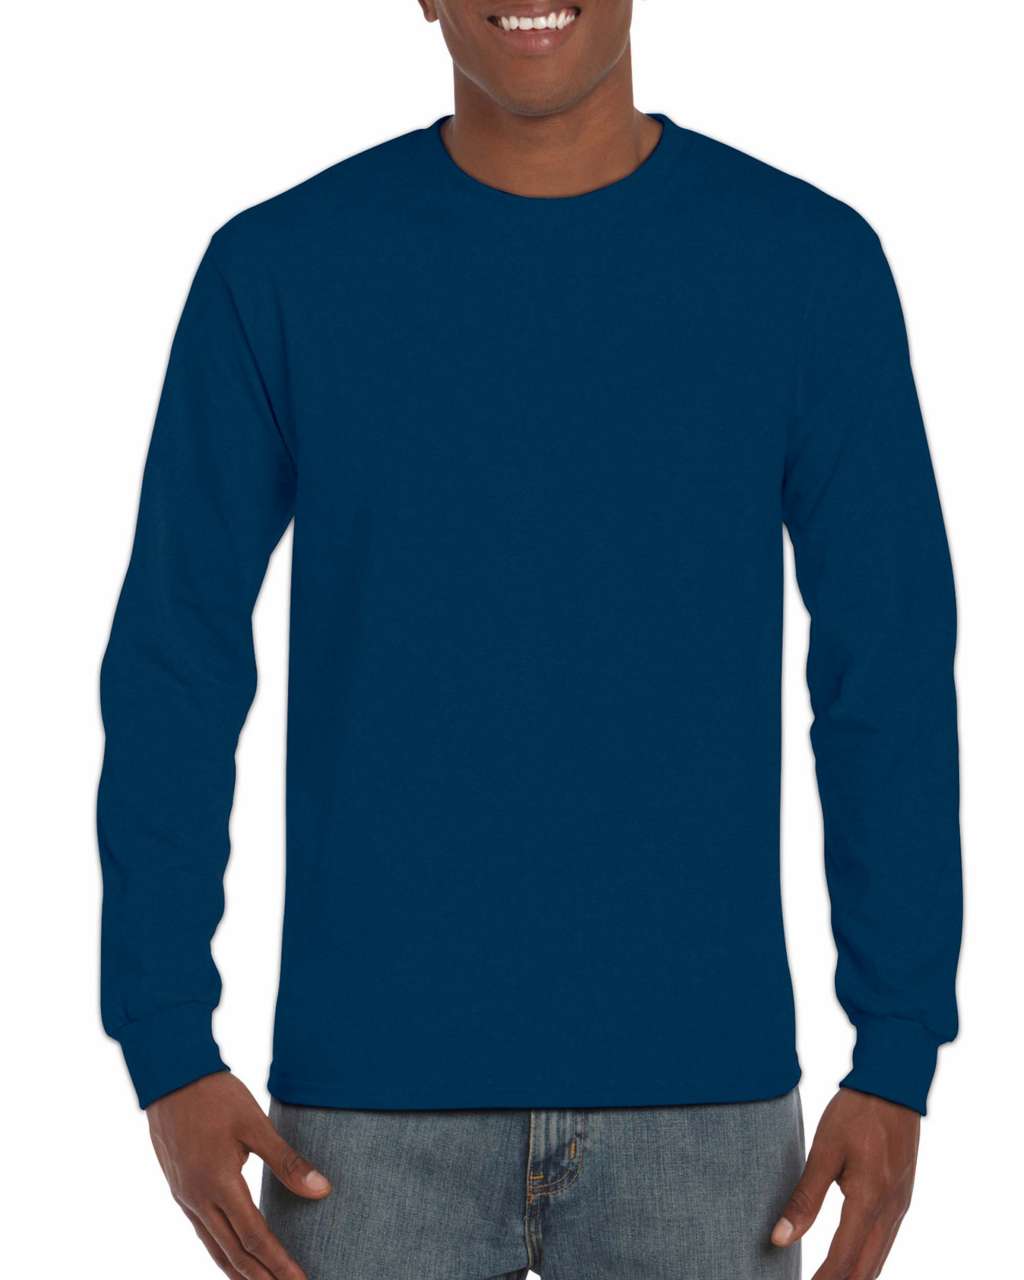 Gildan Hammer Adult Long Sleeve T-shirt - blue